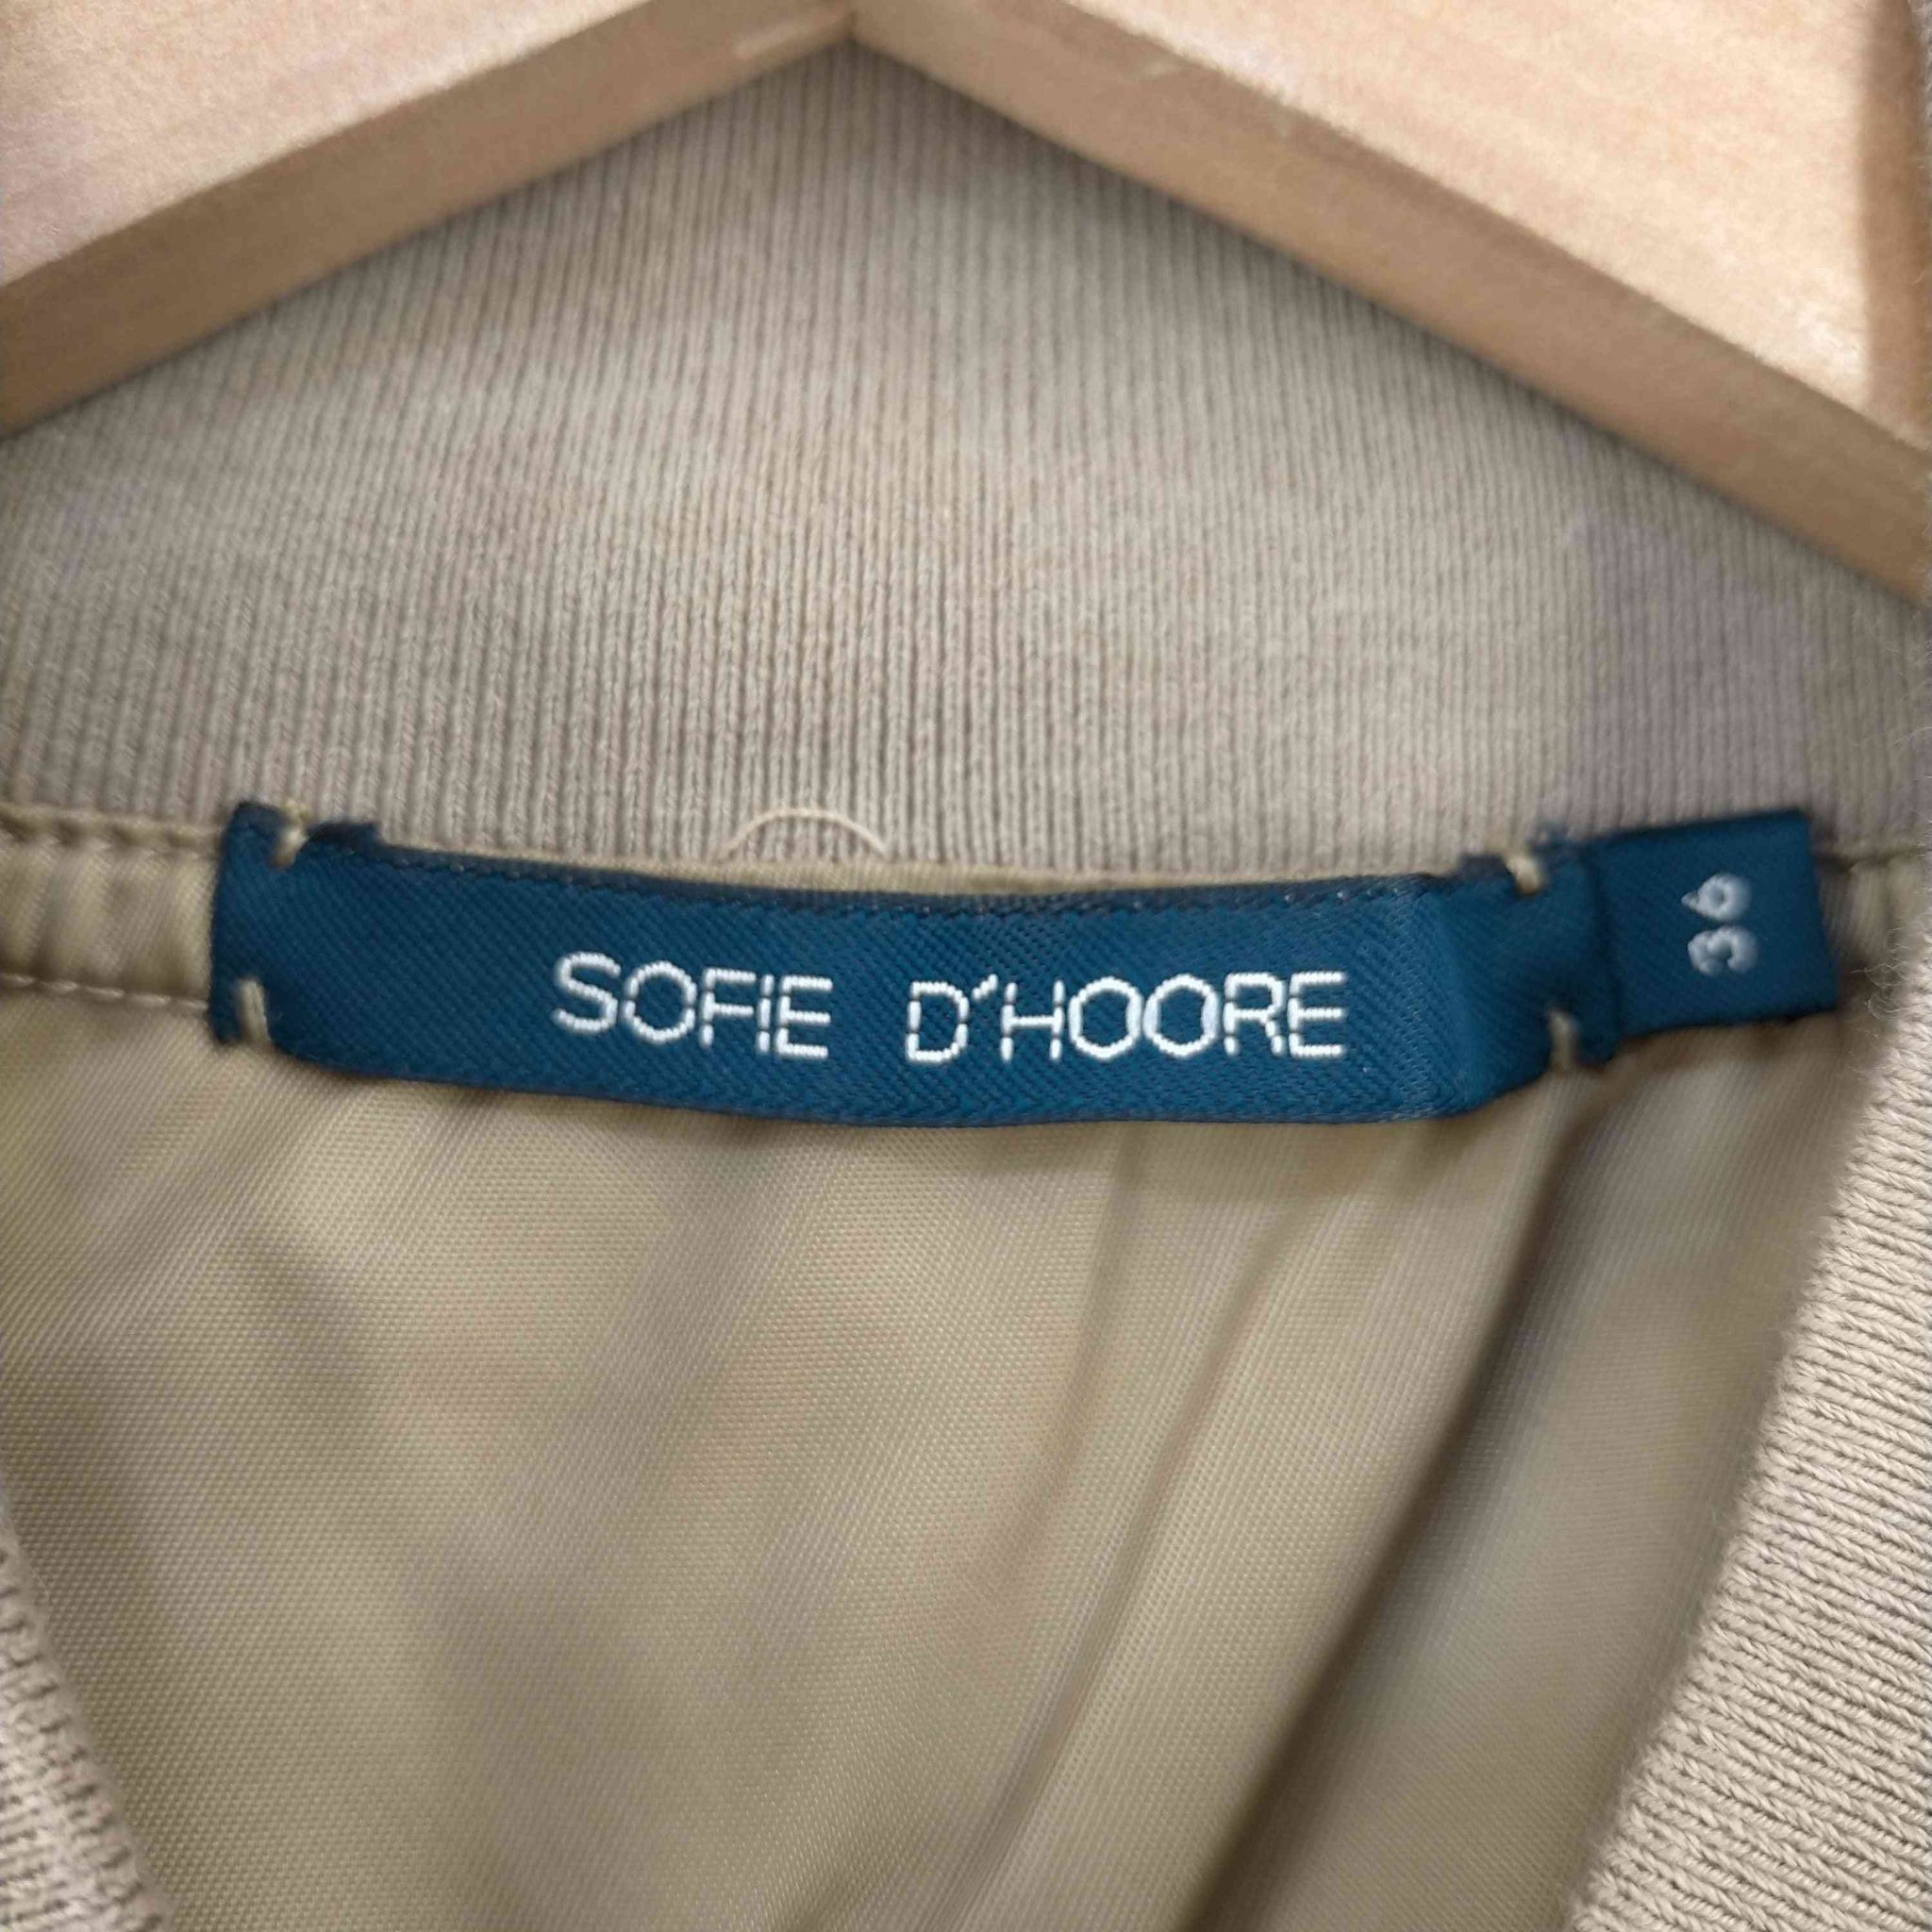 SOFIE DHOORE(ソフィードール)Circuit Jacket